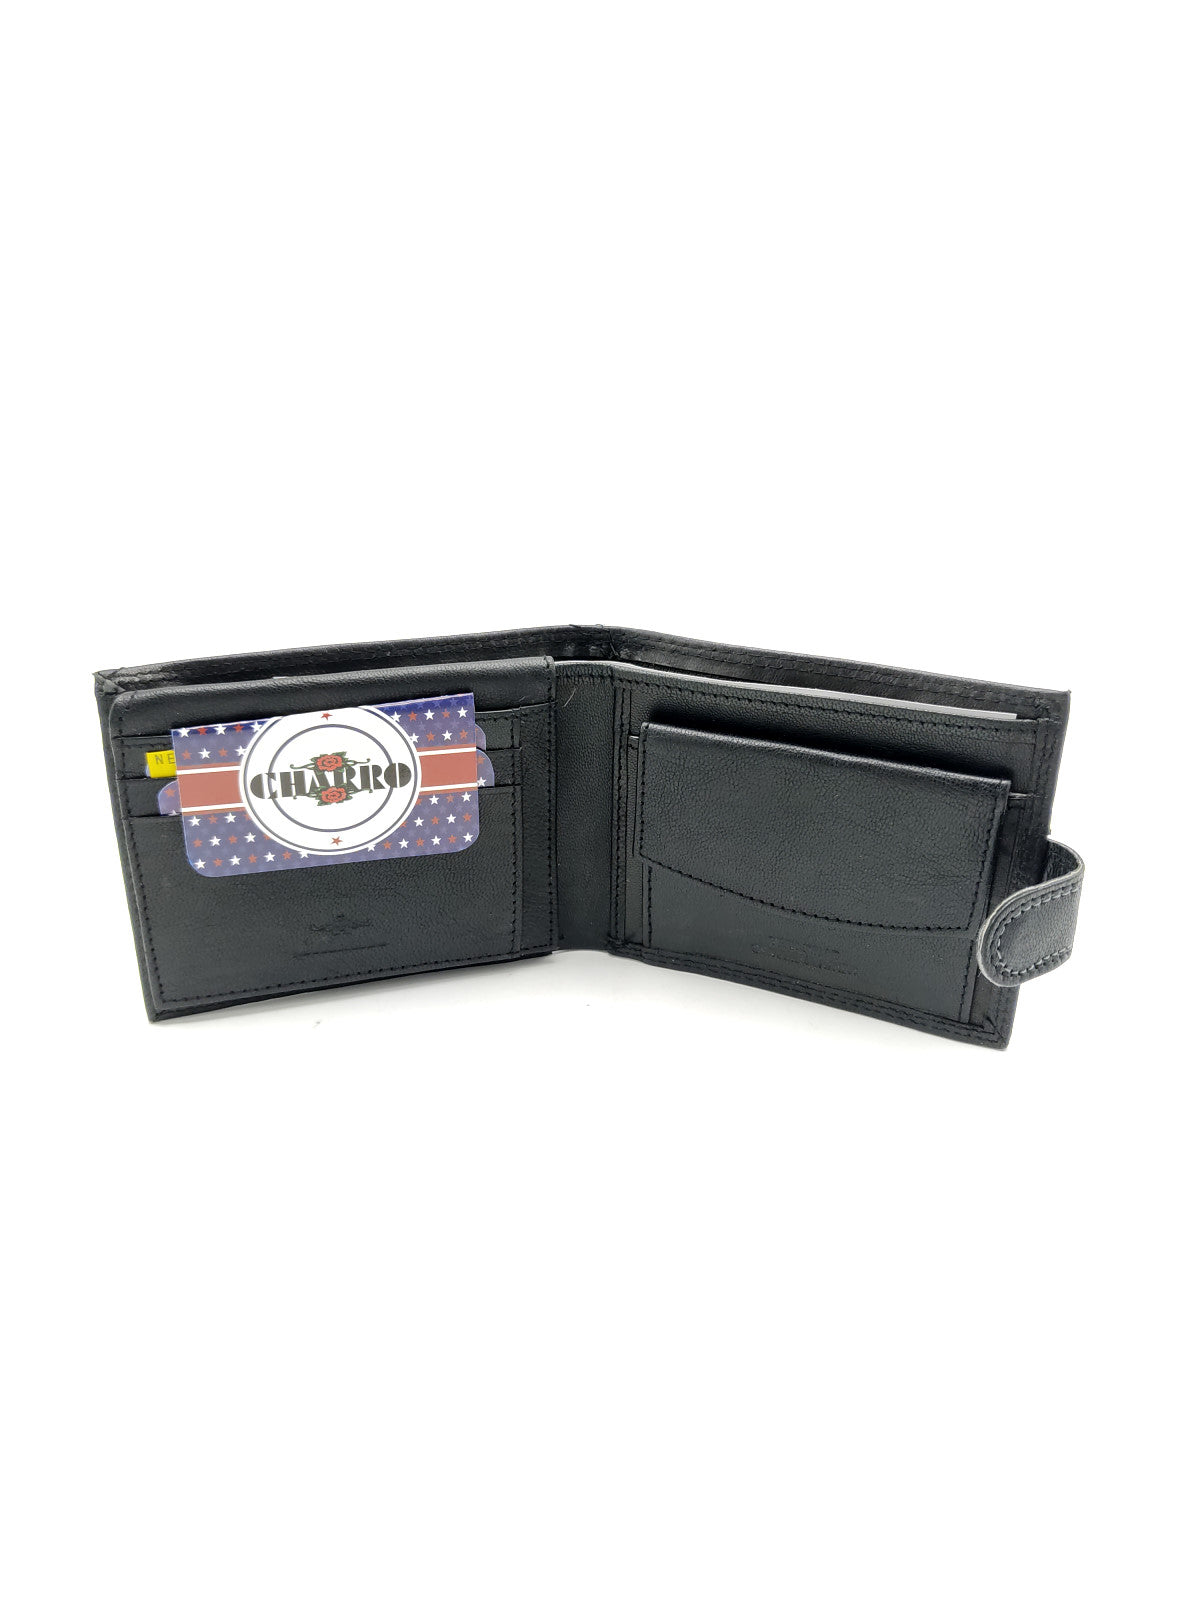 Genuine leather wallet for men, Brand Charro, art. IMER1128.422